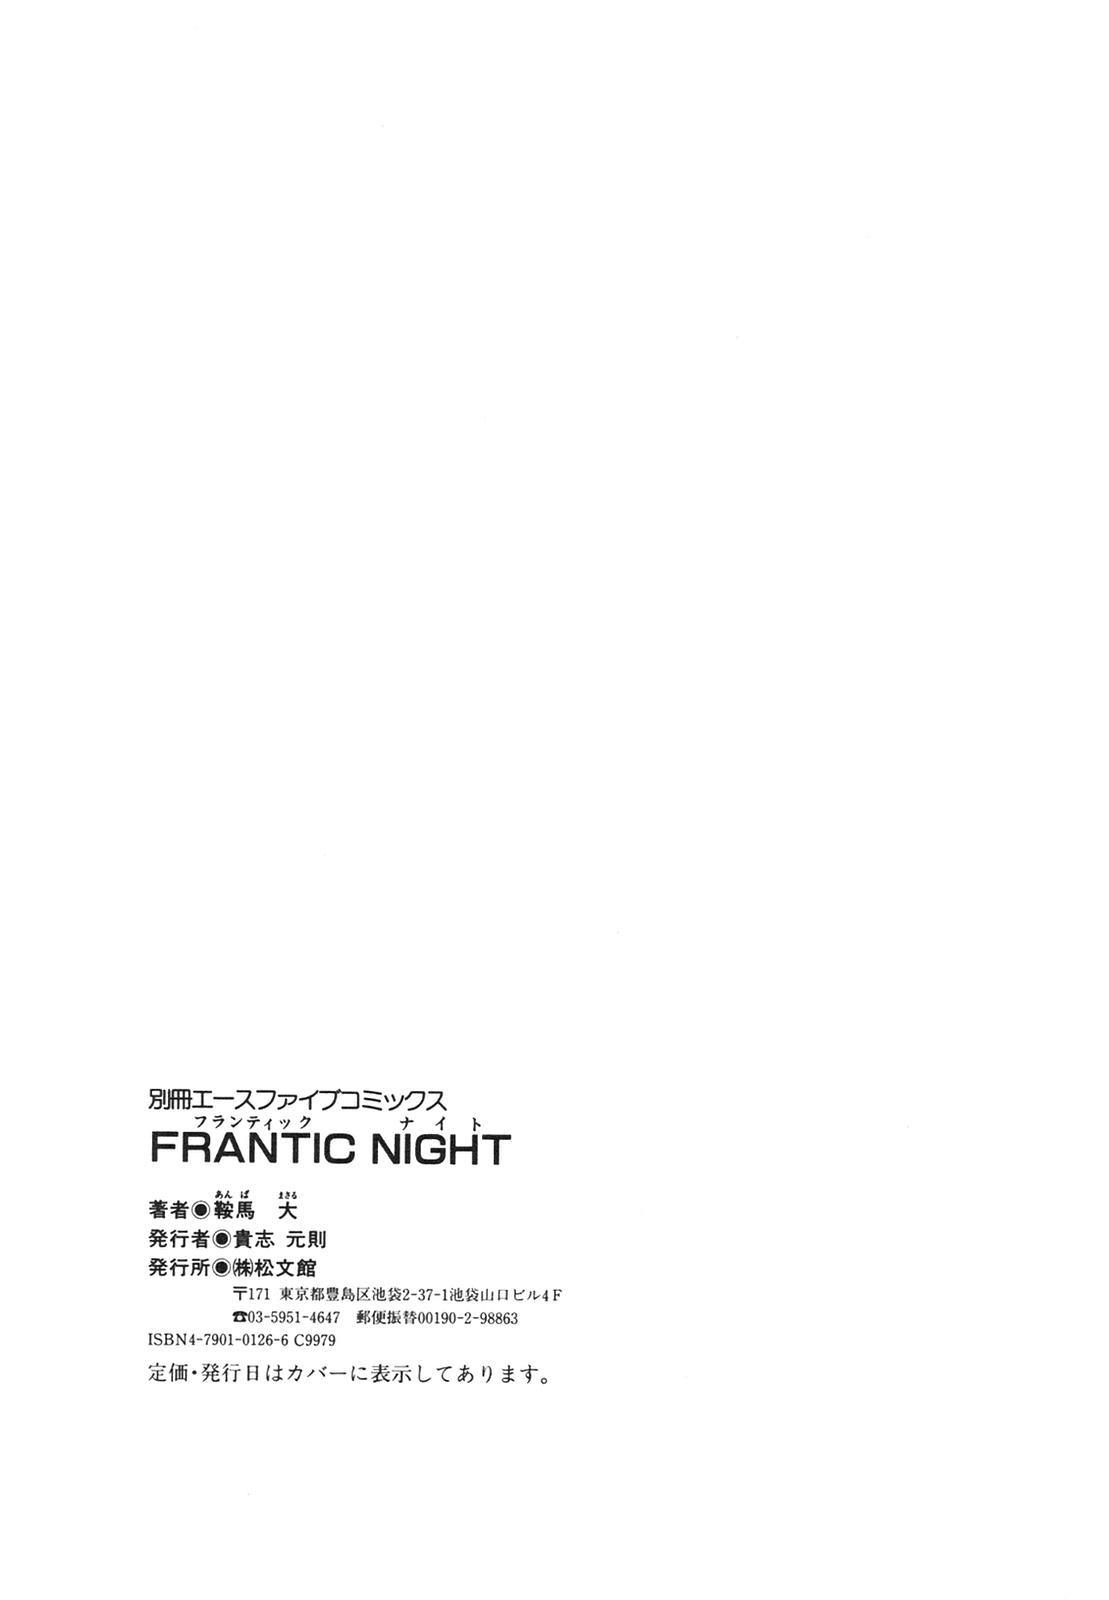 [鞍馬大] FRANTIC NIGHT